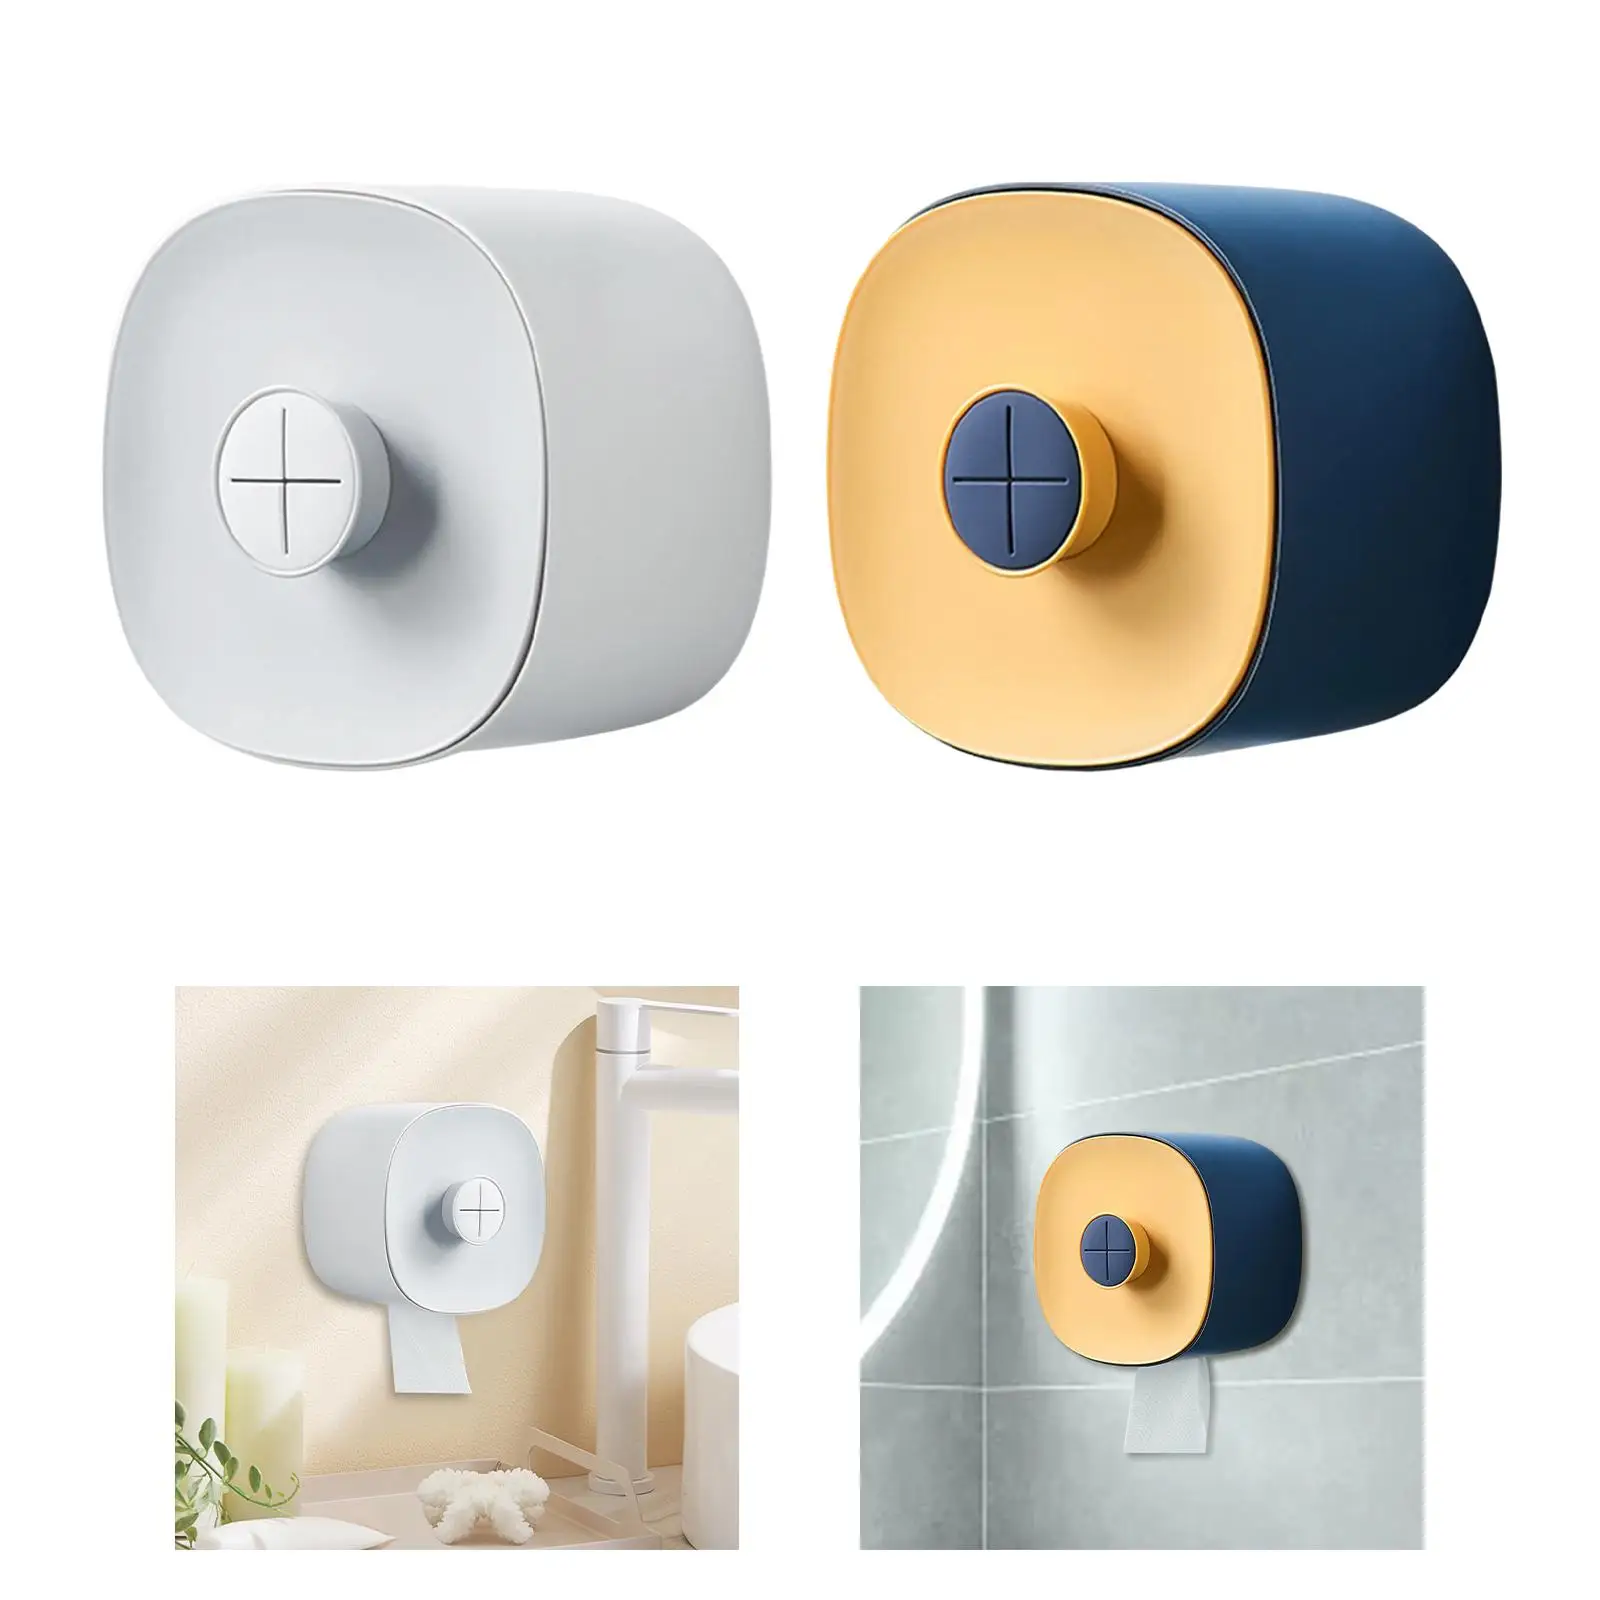 Toilet Paper Roll Storage Dispenser Waterproof Face Towel Organizer Tissue Storage Box for Bathroom Washroom Accessories